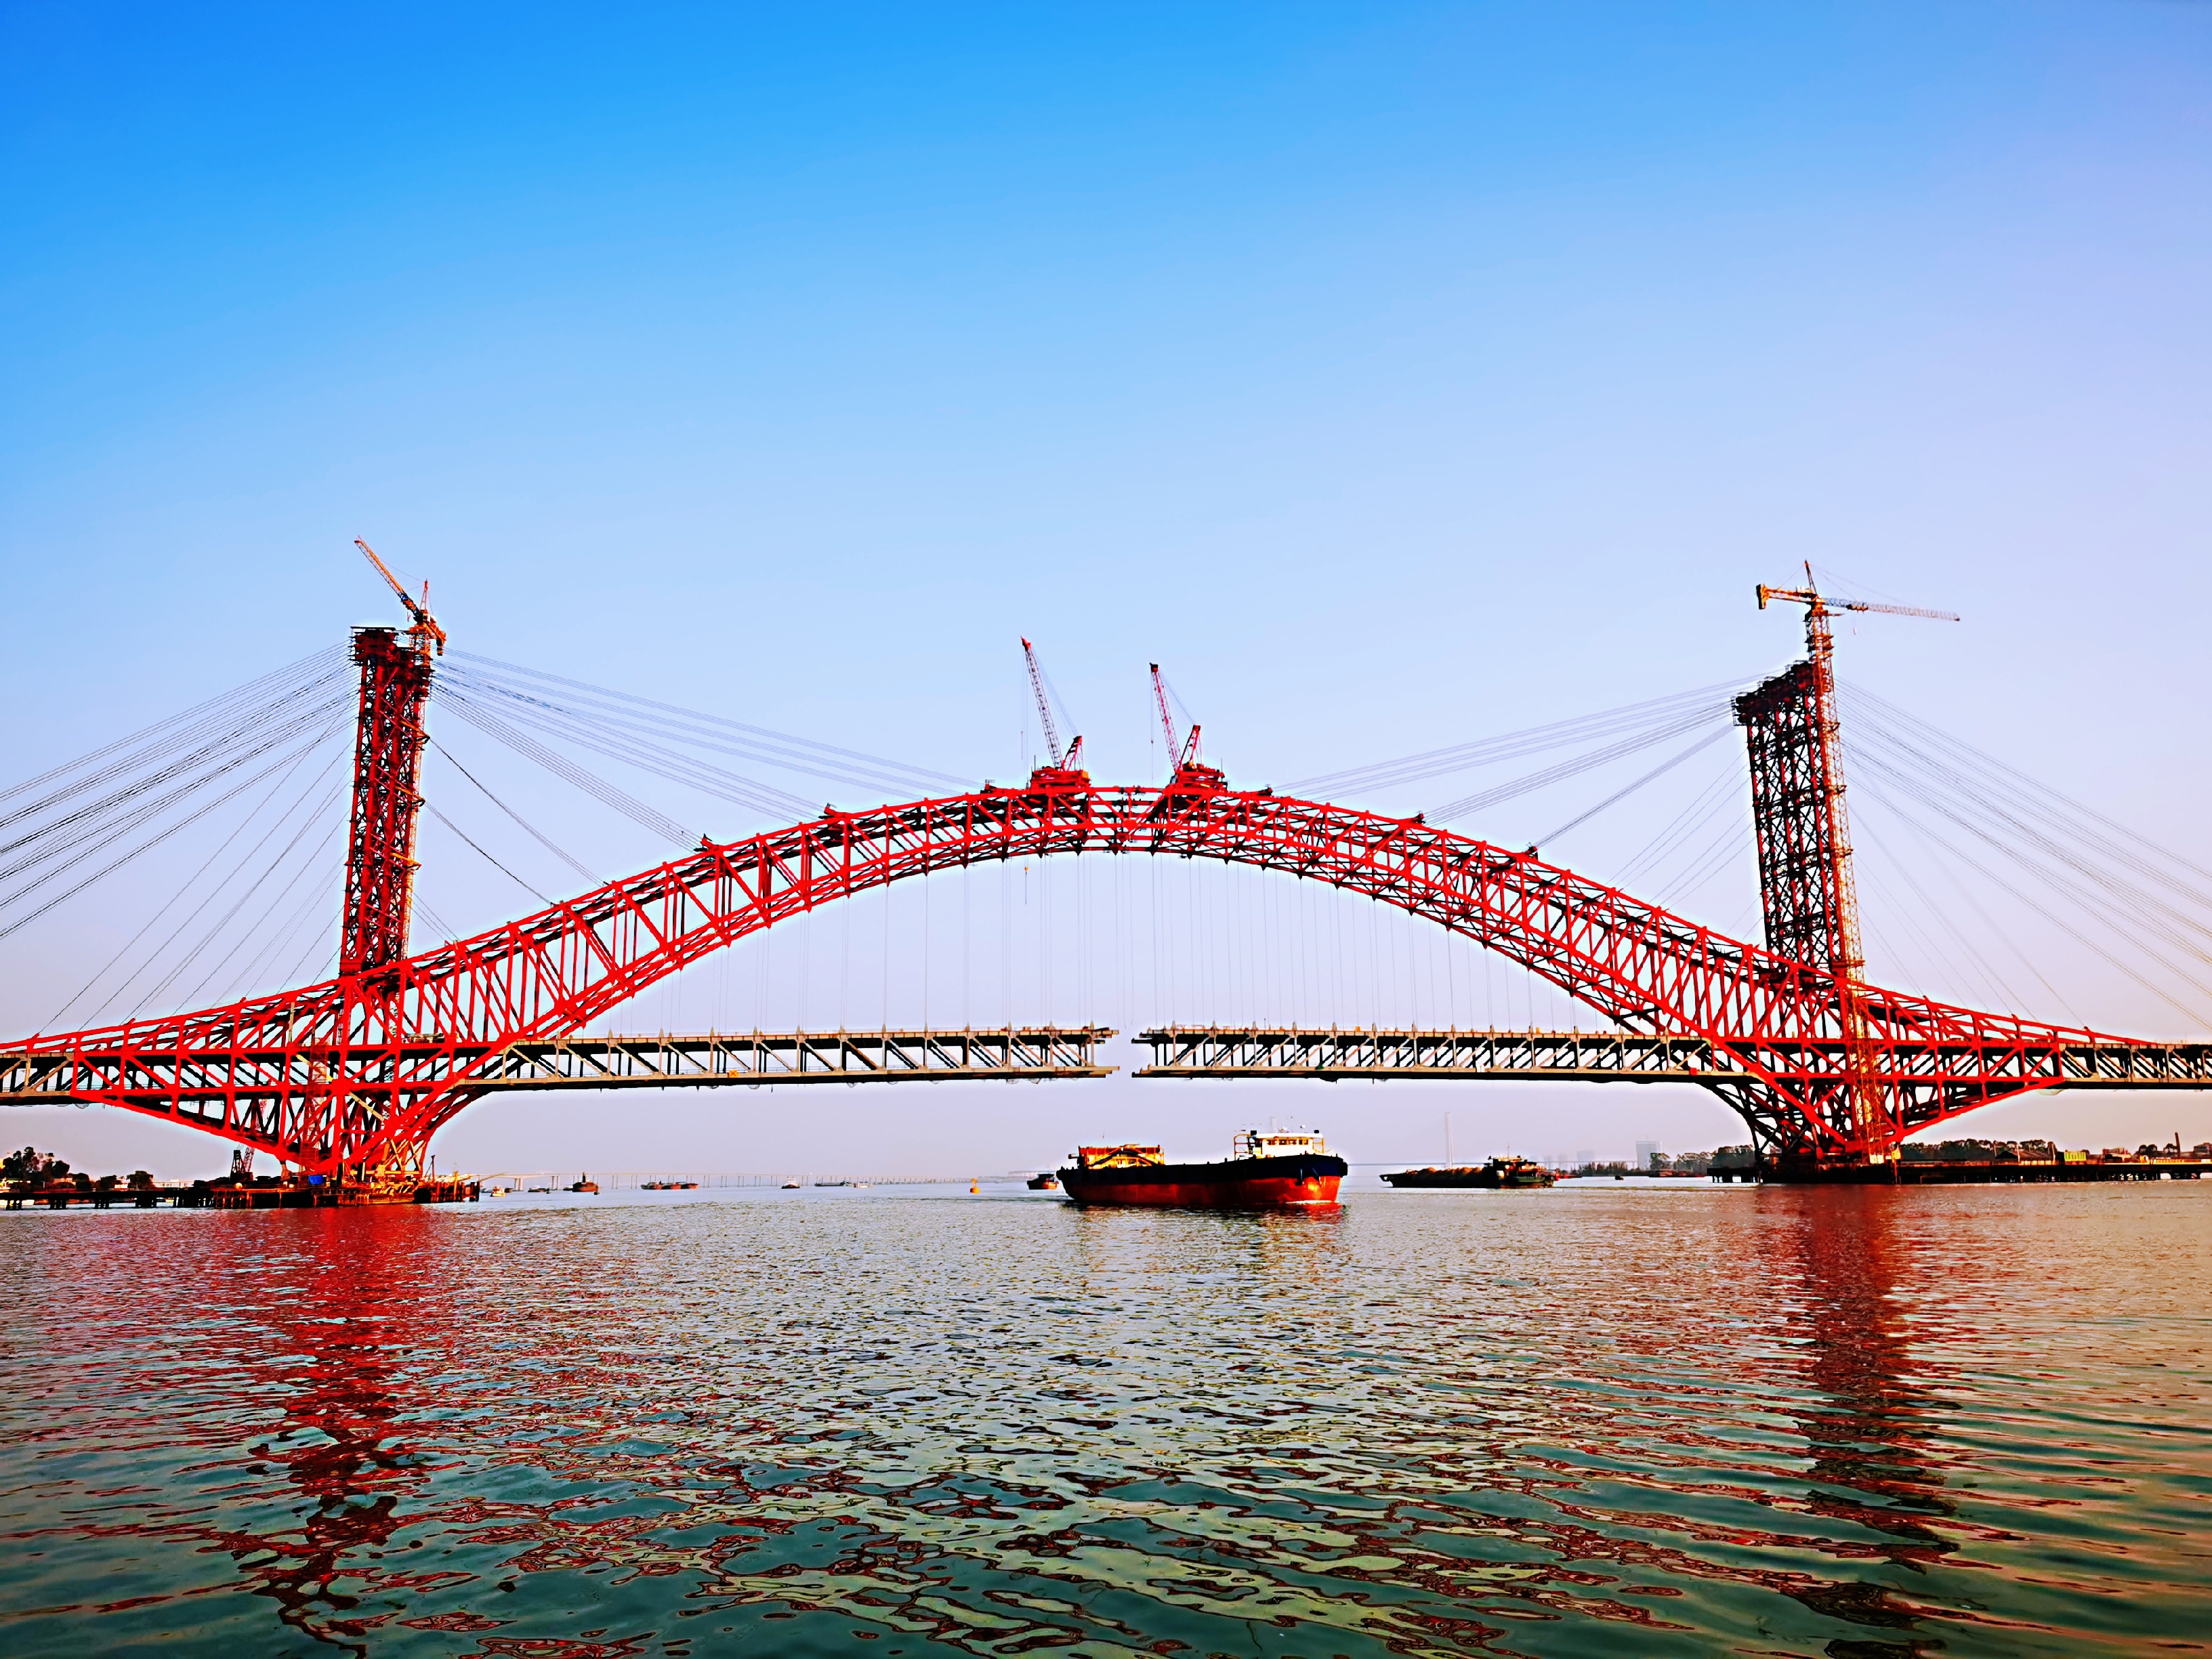 广州南沙明珠湾大桥主桥合龙!创"三主桁钢桁拱双层桥"